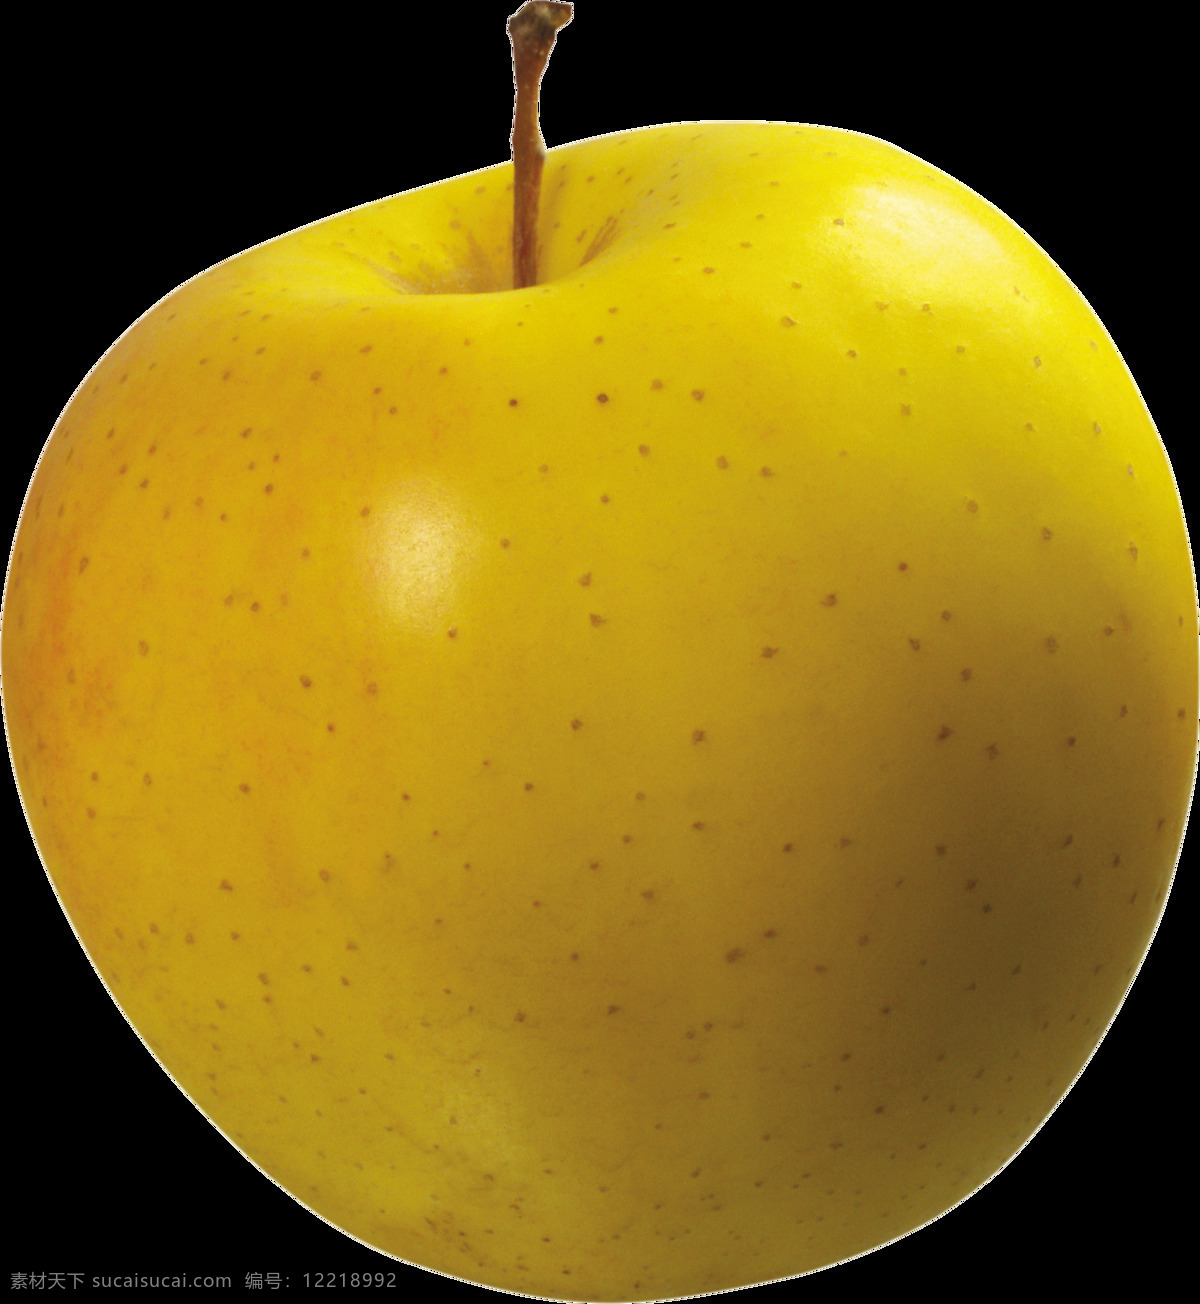 黄 颜色 苹果 免 抠 透明 图 层 青苹果 苹果卡通图片 苹果logo 苹果简笔画 壁纸高清 大苹果 红苹果 苹果梨树 苹果商标 金毛苹果 青苹果榨汁